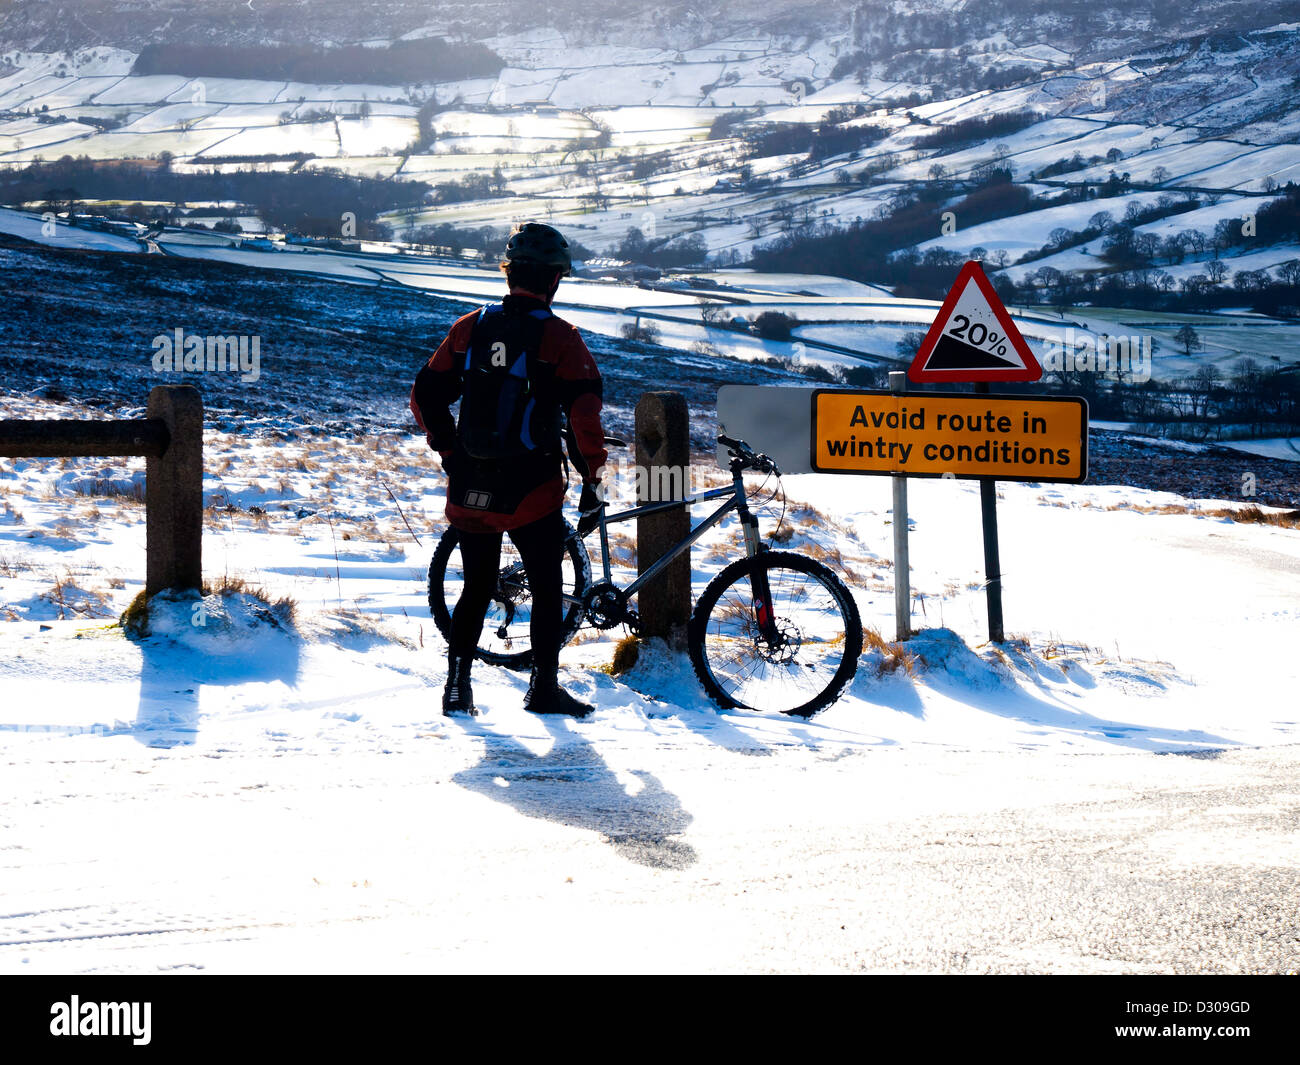 Ein Radfahrer ruht über eine vermeiden Route in winterlichen Bedingungen Zeichen auf einem steilen Hügel mit Blick auf Farndale im Schnee Stockfoto